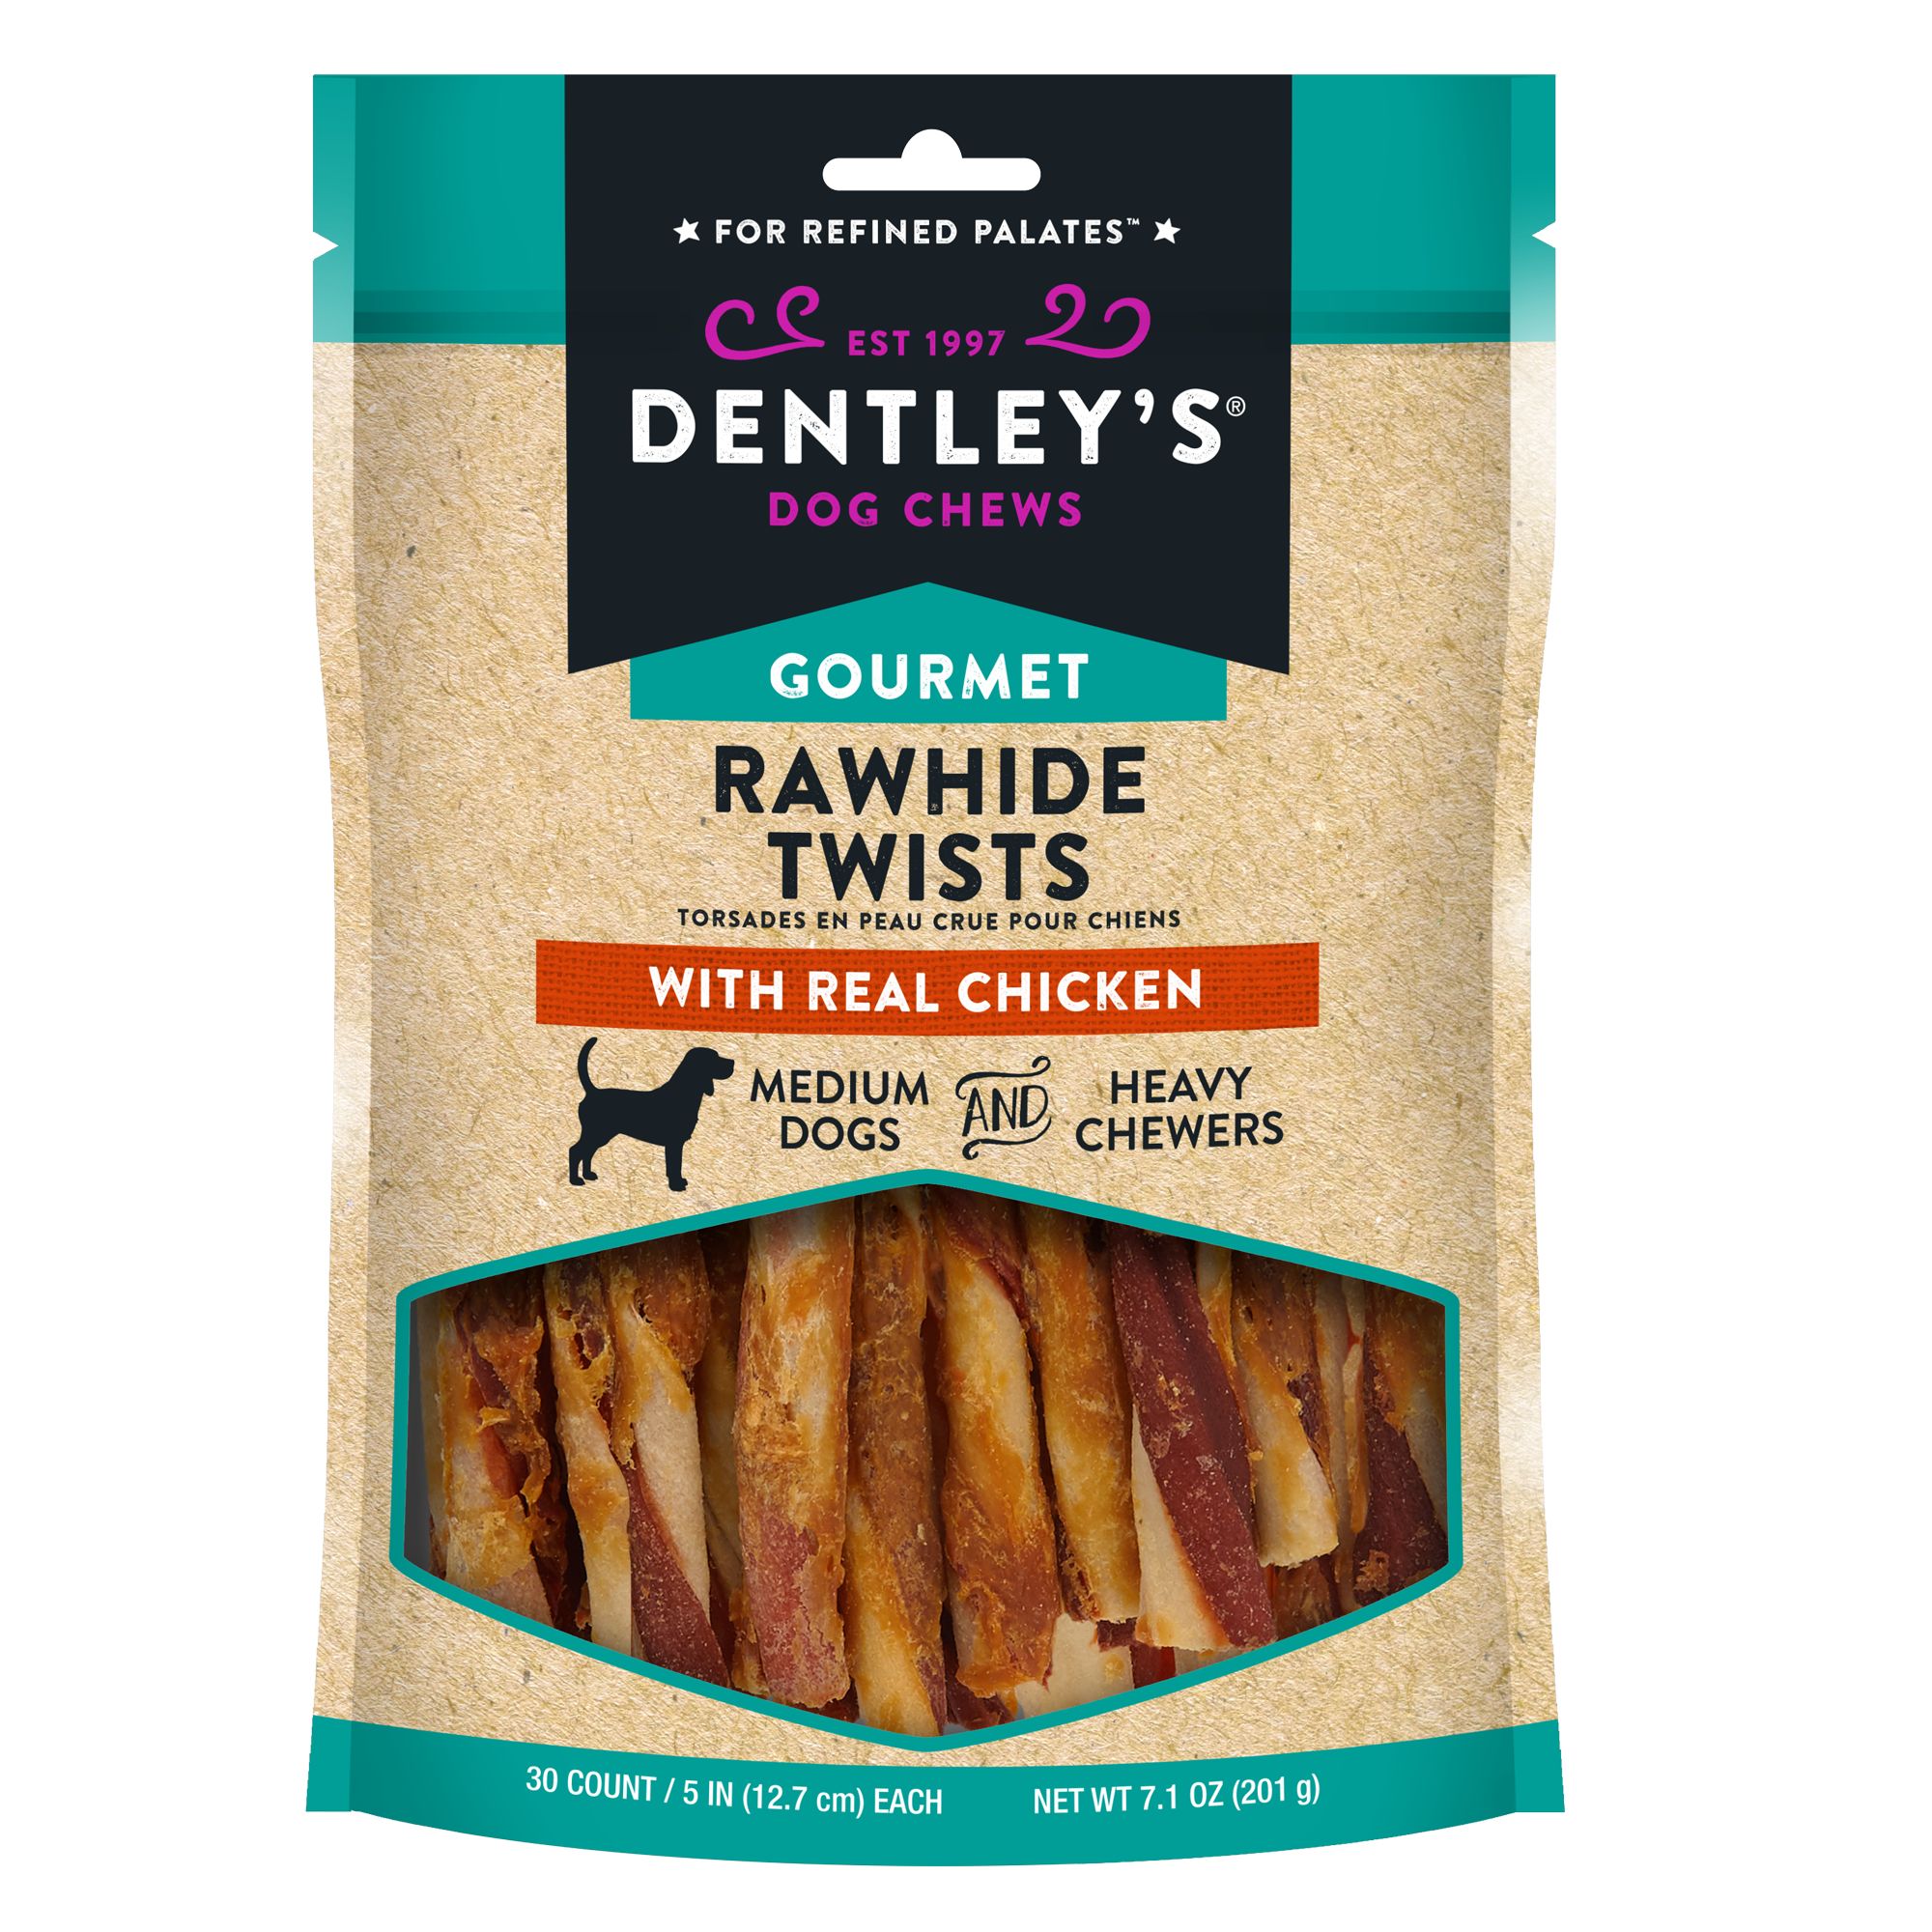 rawhide twist dog chews